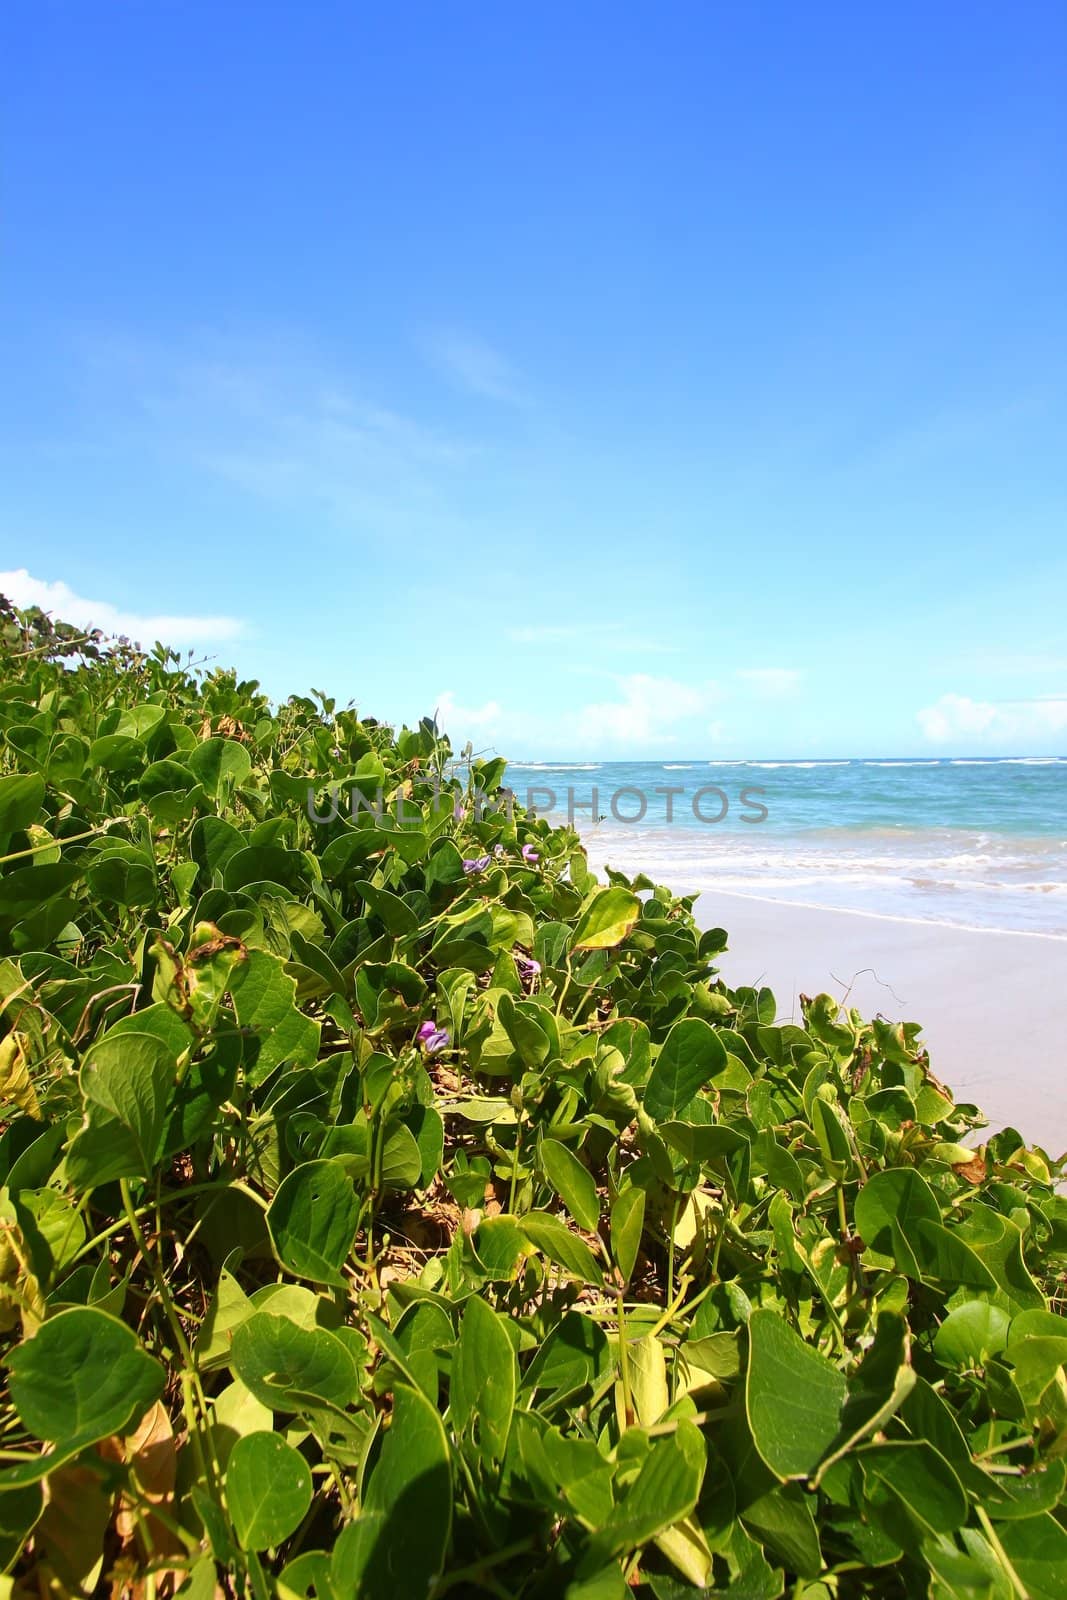 Tropical beach on the Caribbean island of Saint Lucia.